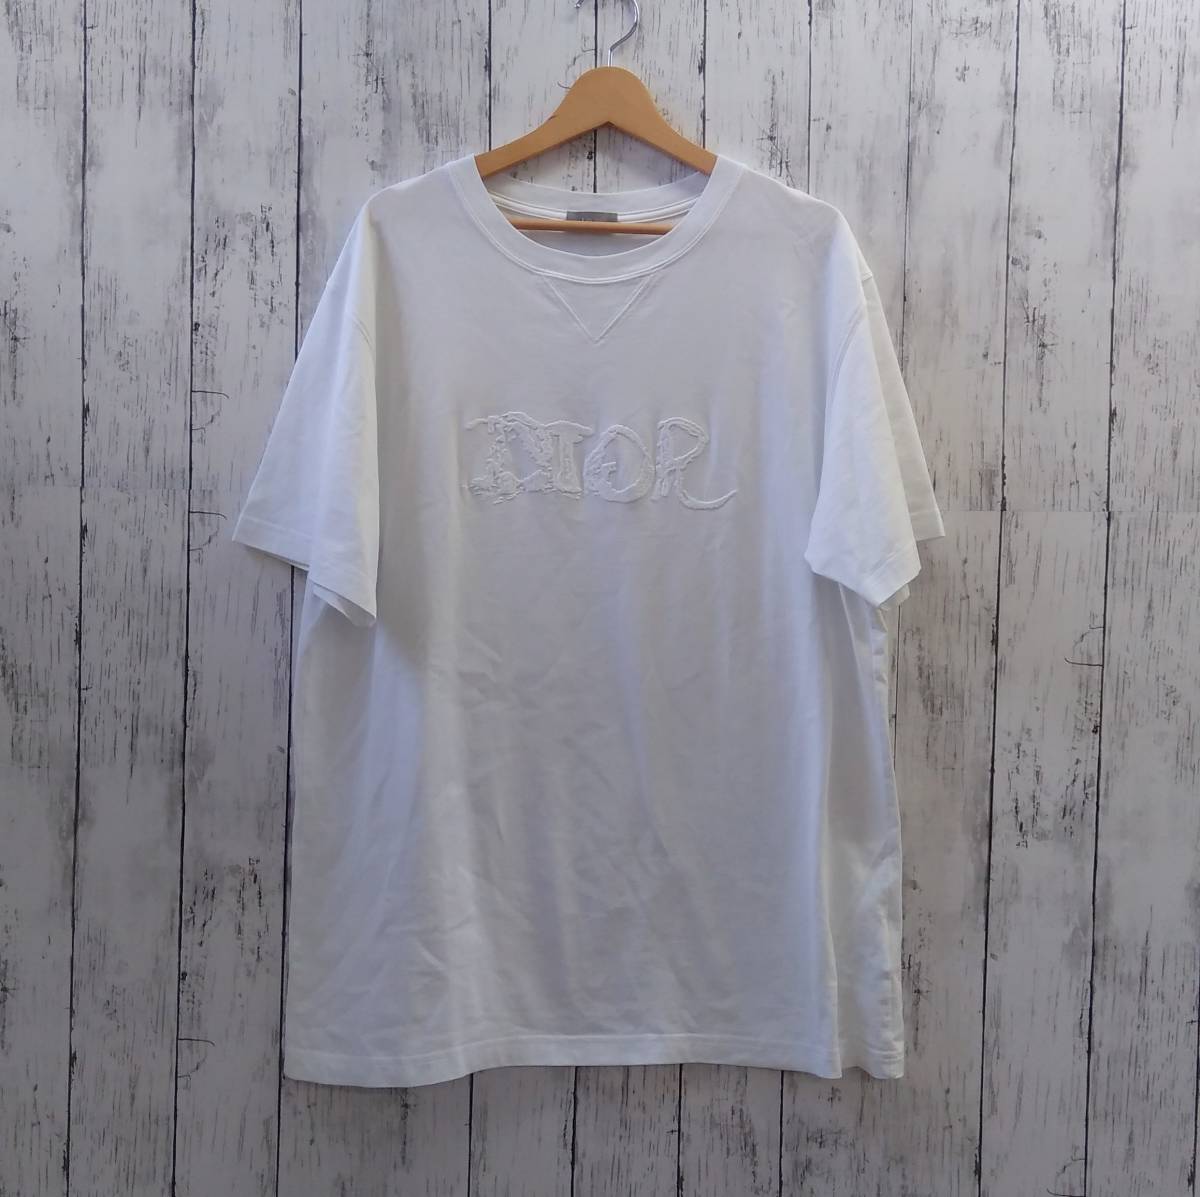 DIOR AND PETER DOIG ディオール ピータードイグ コラボ Tシャツ オーバーサイズ ホワイト 白 XL 68135 ロゴ 刺繍 2021AＷ 店舗受取可